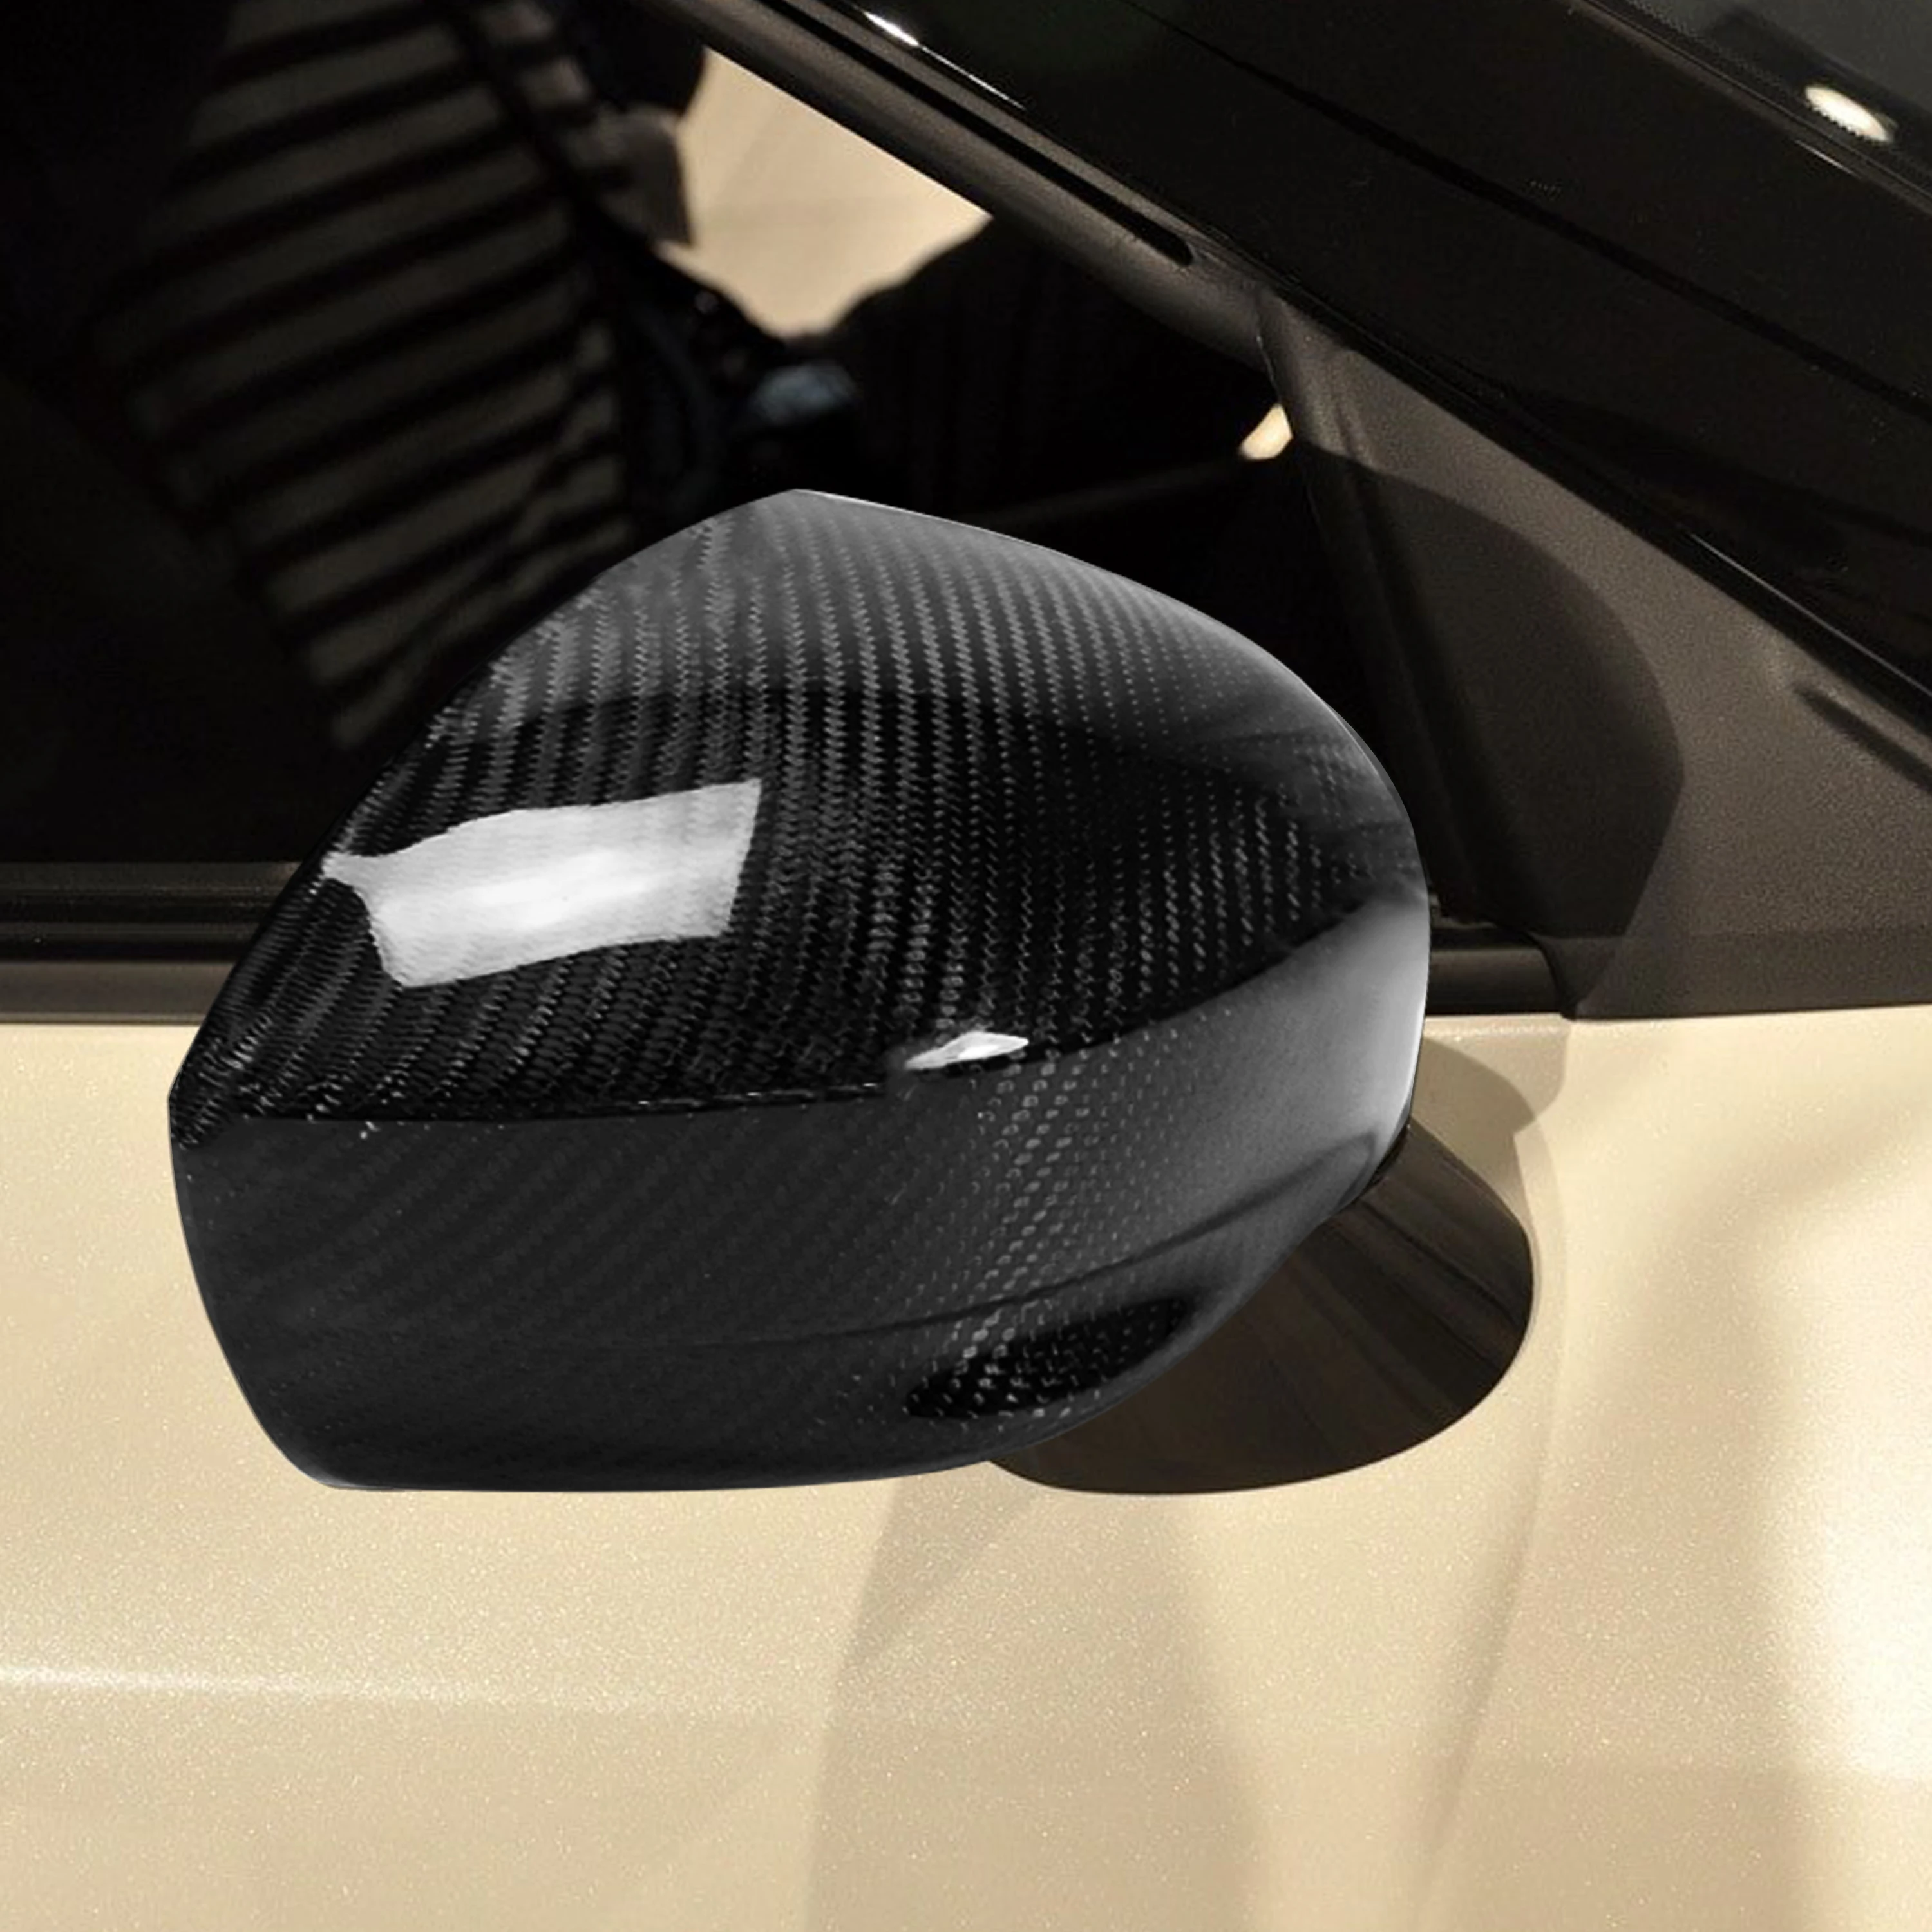 For Nissan GTR R35 2008-2016 Carbon Fiber Rear View Mirror Cover Caps Protector Sæt Døren sidefløjene Modificeret Bil Tilbehør 4